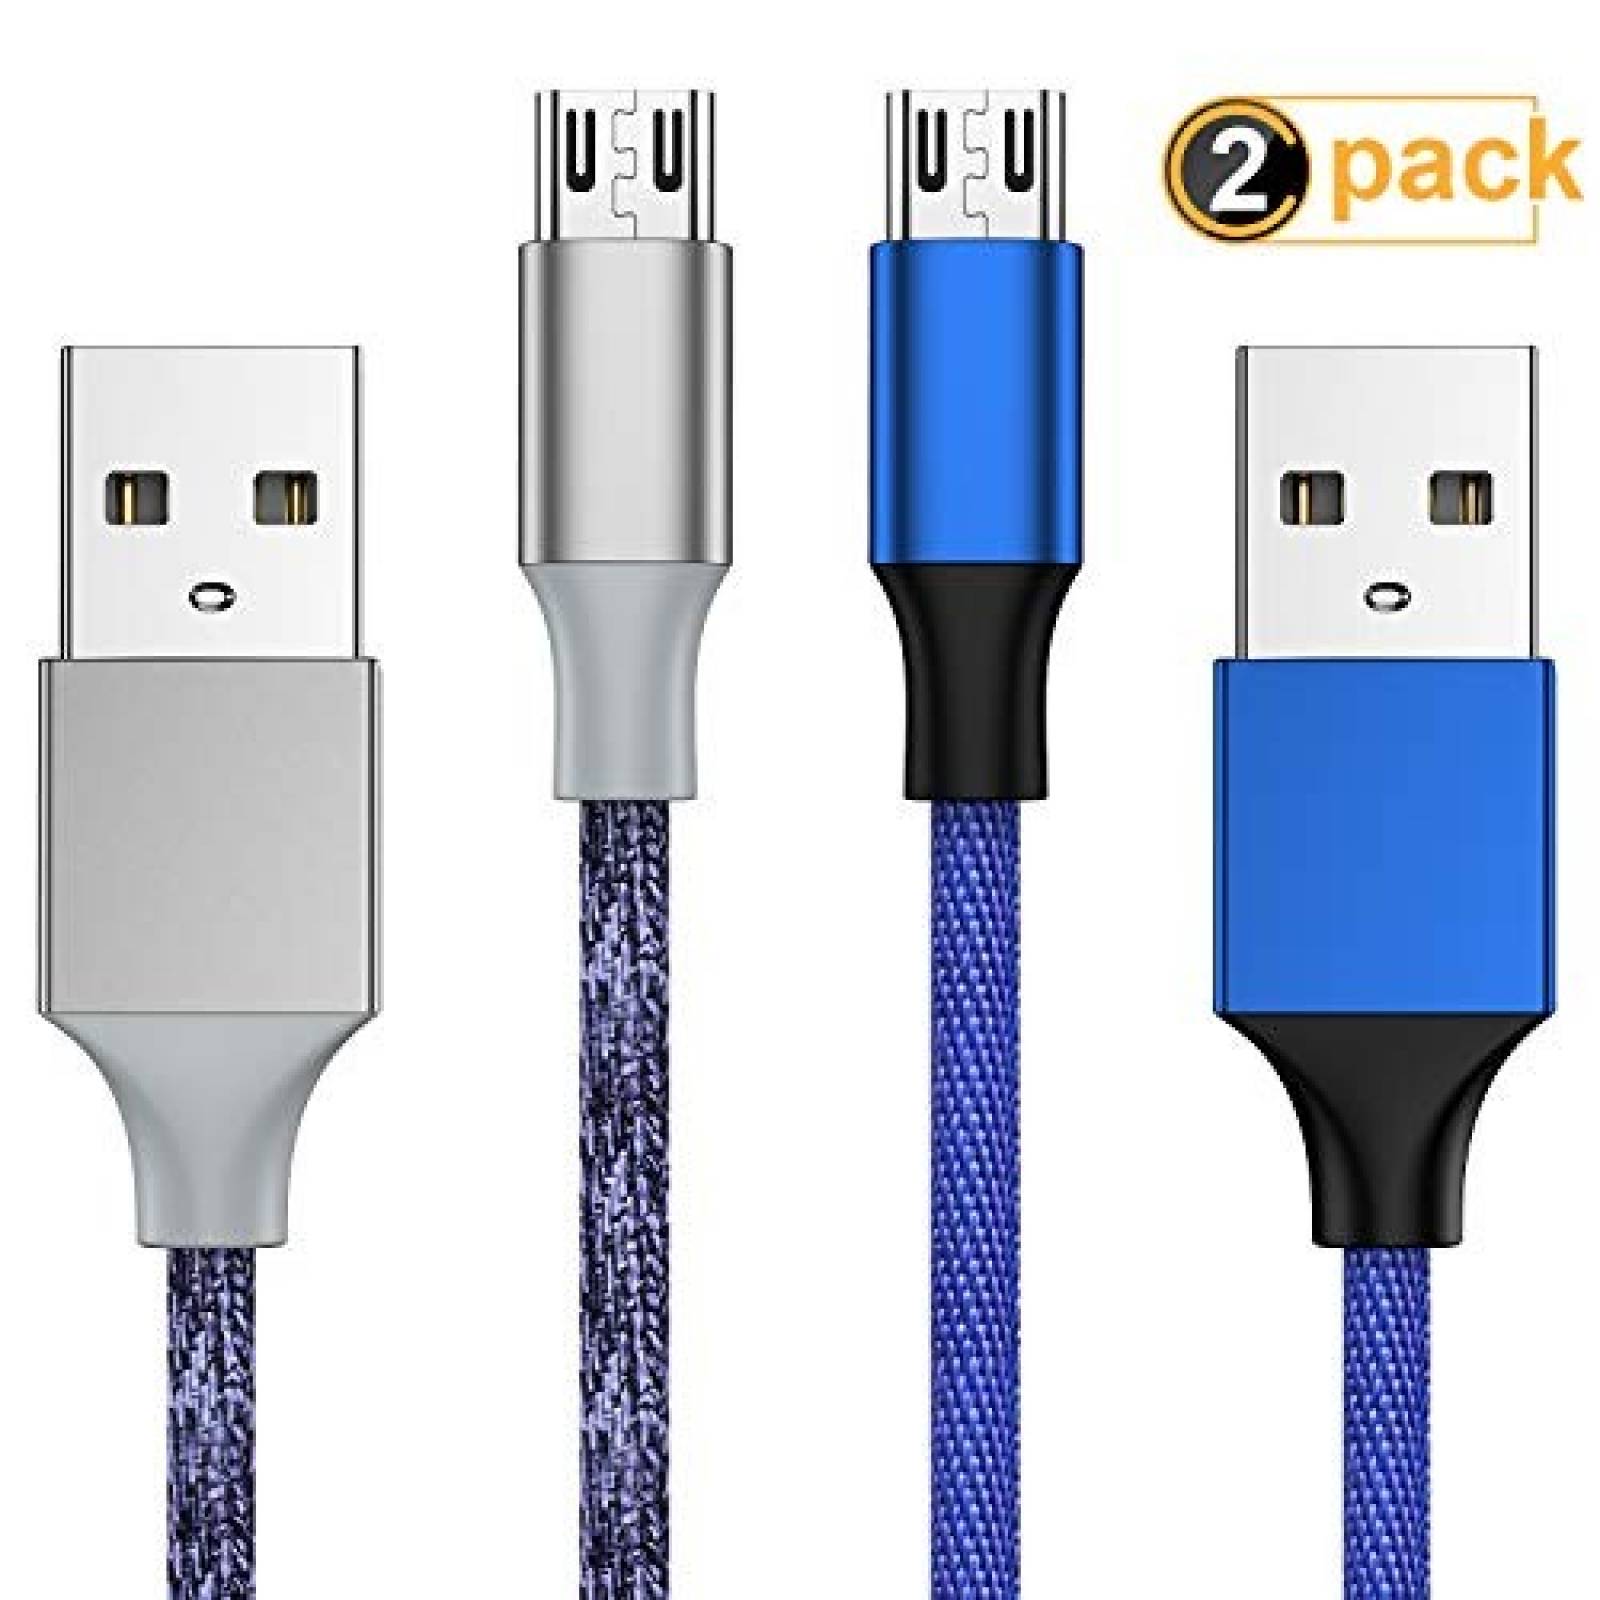 Cargador Oritikur Micro USB 2.0 20ft 2 Pack -Gris/Azul